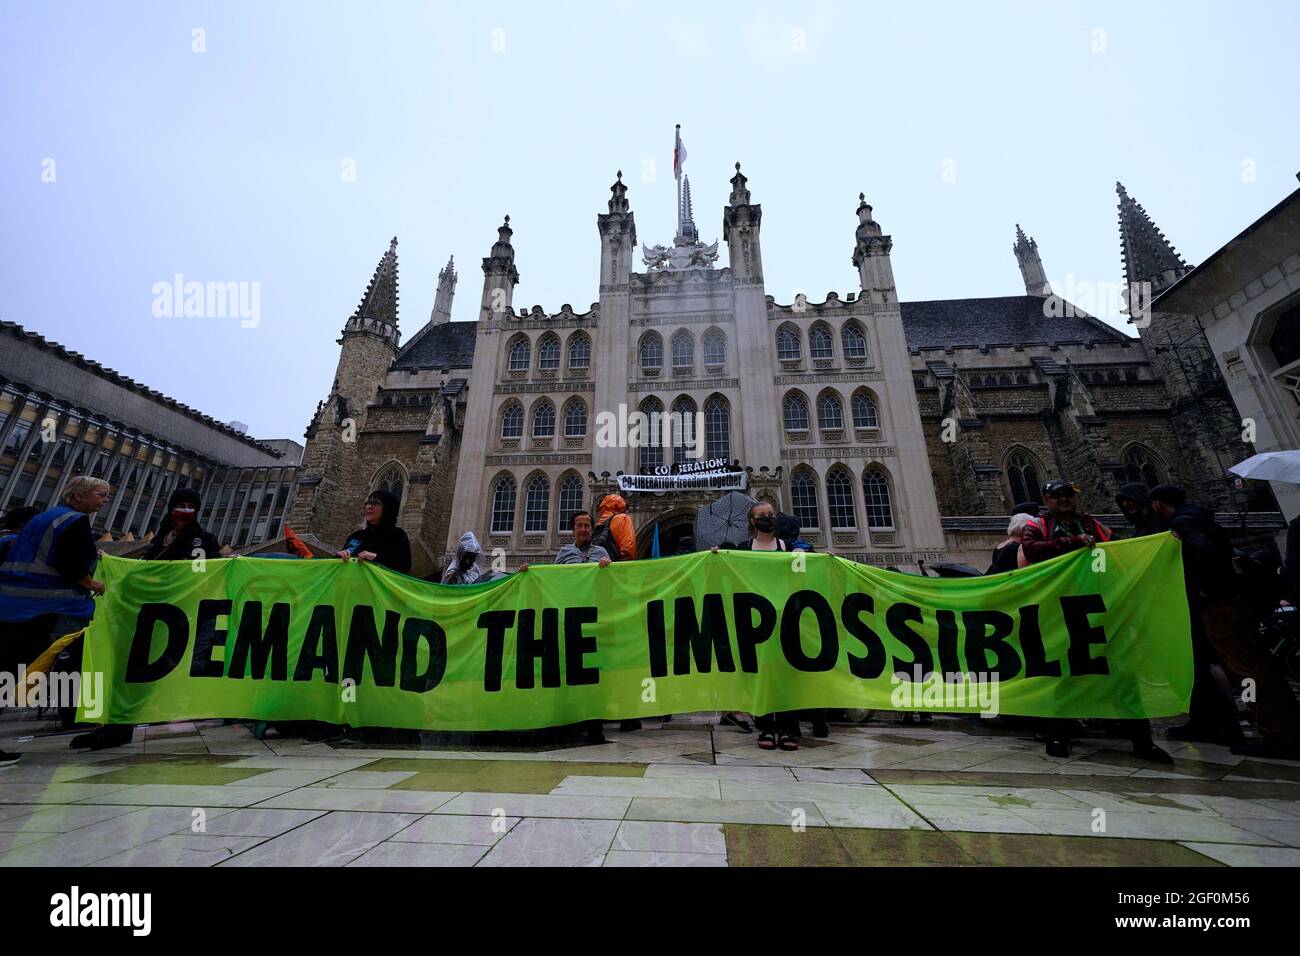 Menschen halten ein Banner vor dem Eingang zur Guildhall in London, wo Demonstranten während eines Protestes der Extinction Rebellion auf eine Kante über dem Eingang geklettert sind. Bilddatum: Sonntag, 22. August 2021. Stockfoto